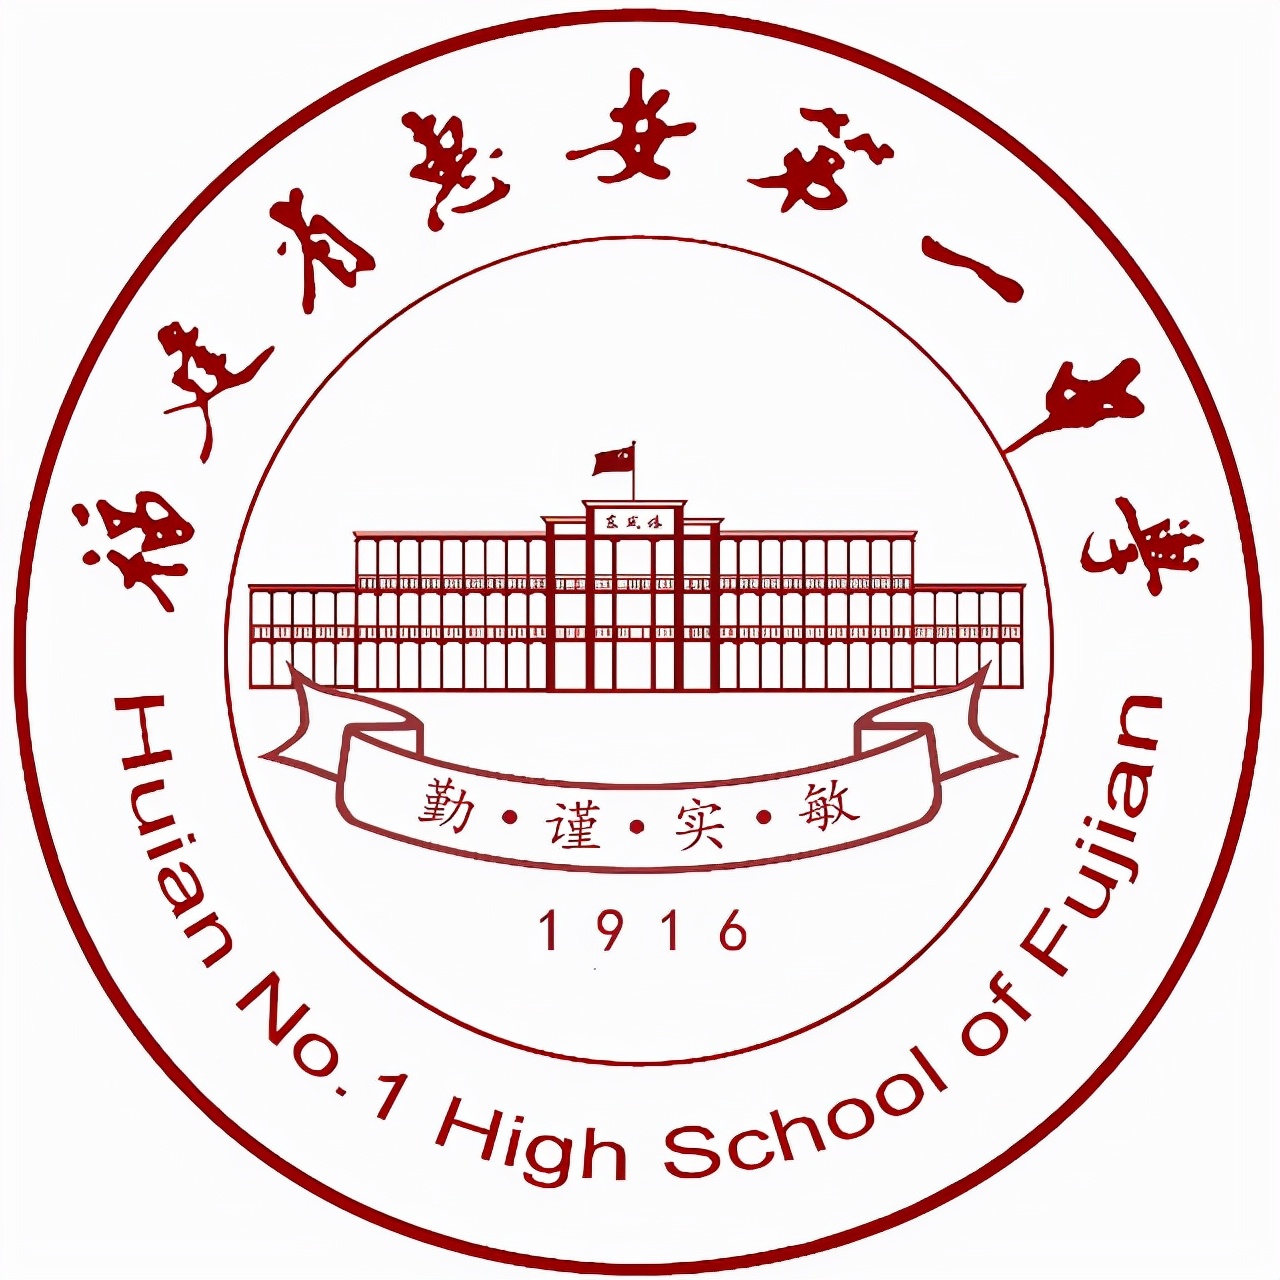 晋江最好的高中有哪些(泉州市最好的10所高中)